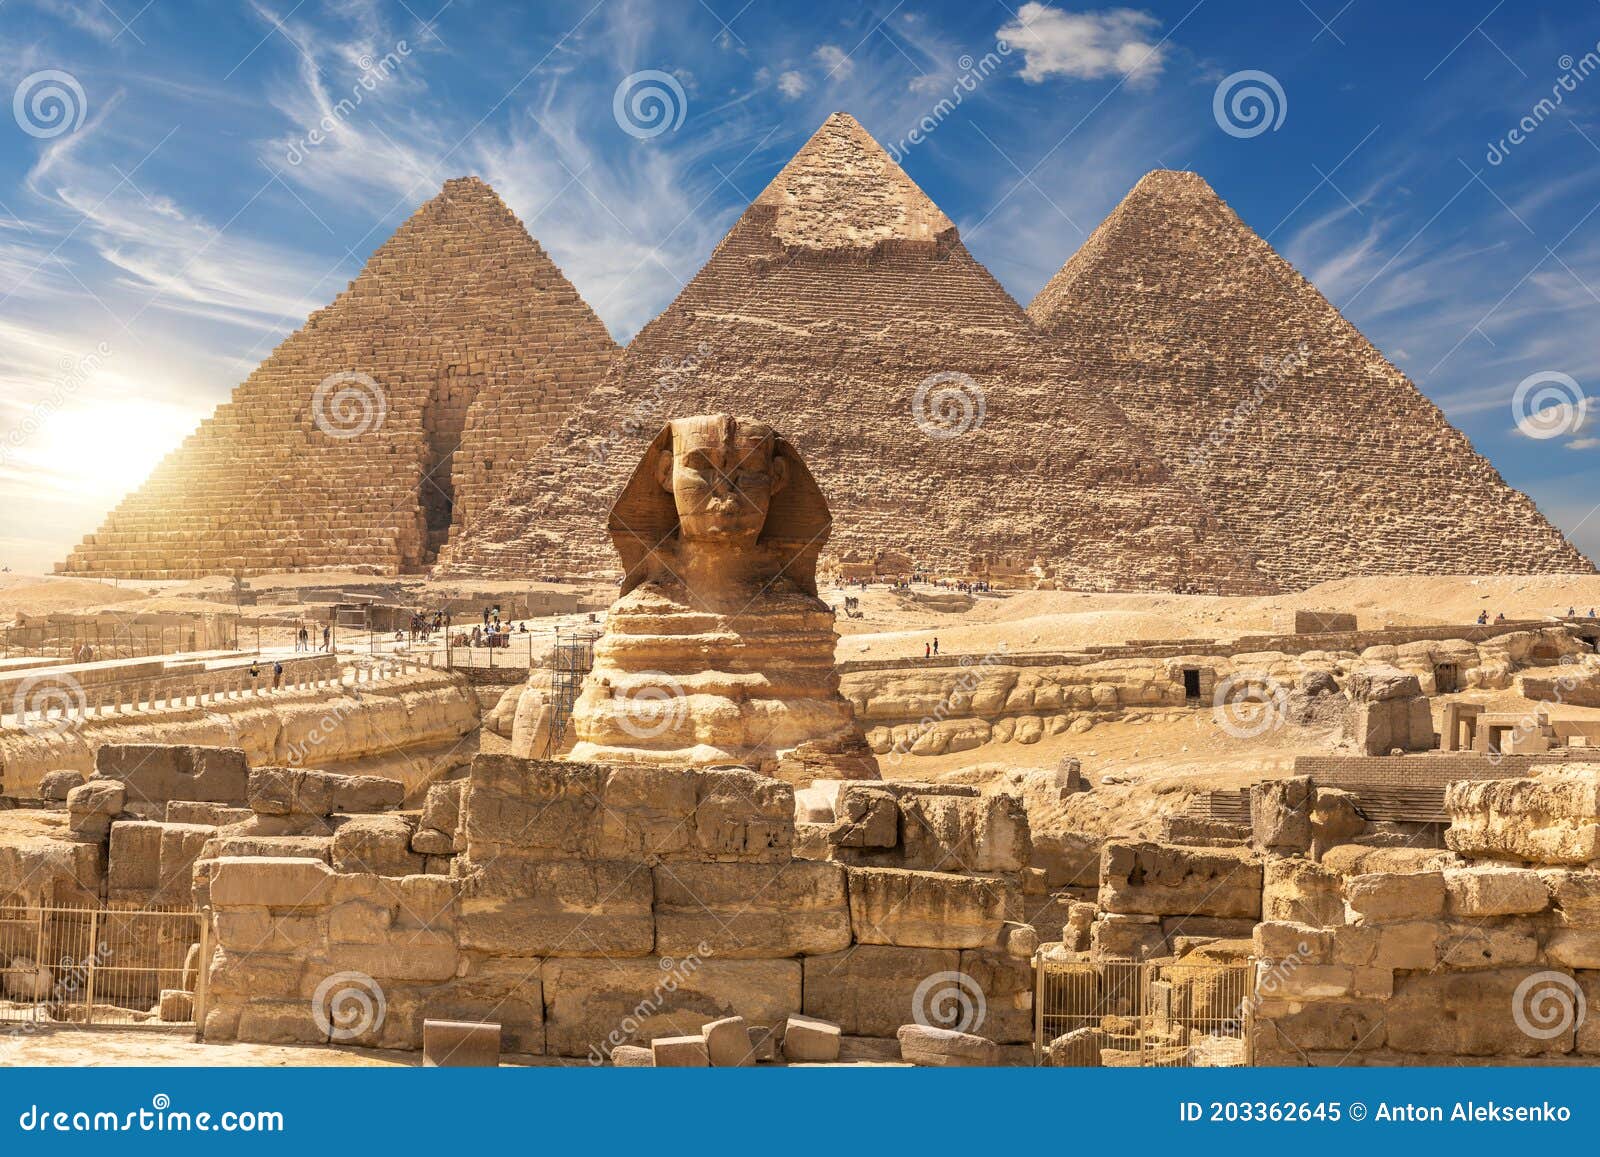 https://thumbs.dreamstime.com/z/le-sphinx-et-les-grandes-pyramides-de-gizeh-pr%C3%A8s-des-ruines-d-un-temple-%C3%A9gypte-203362645.jpg